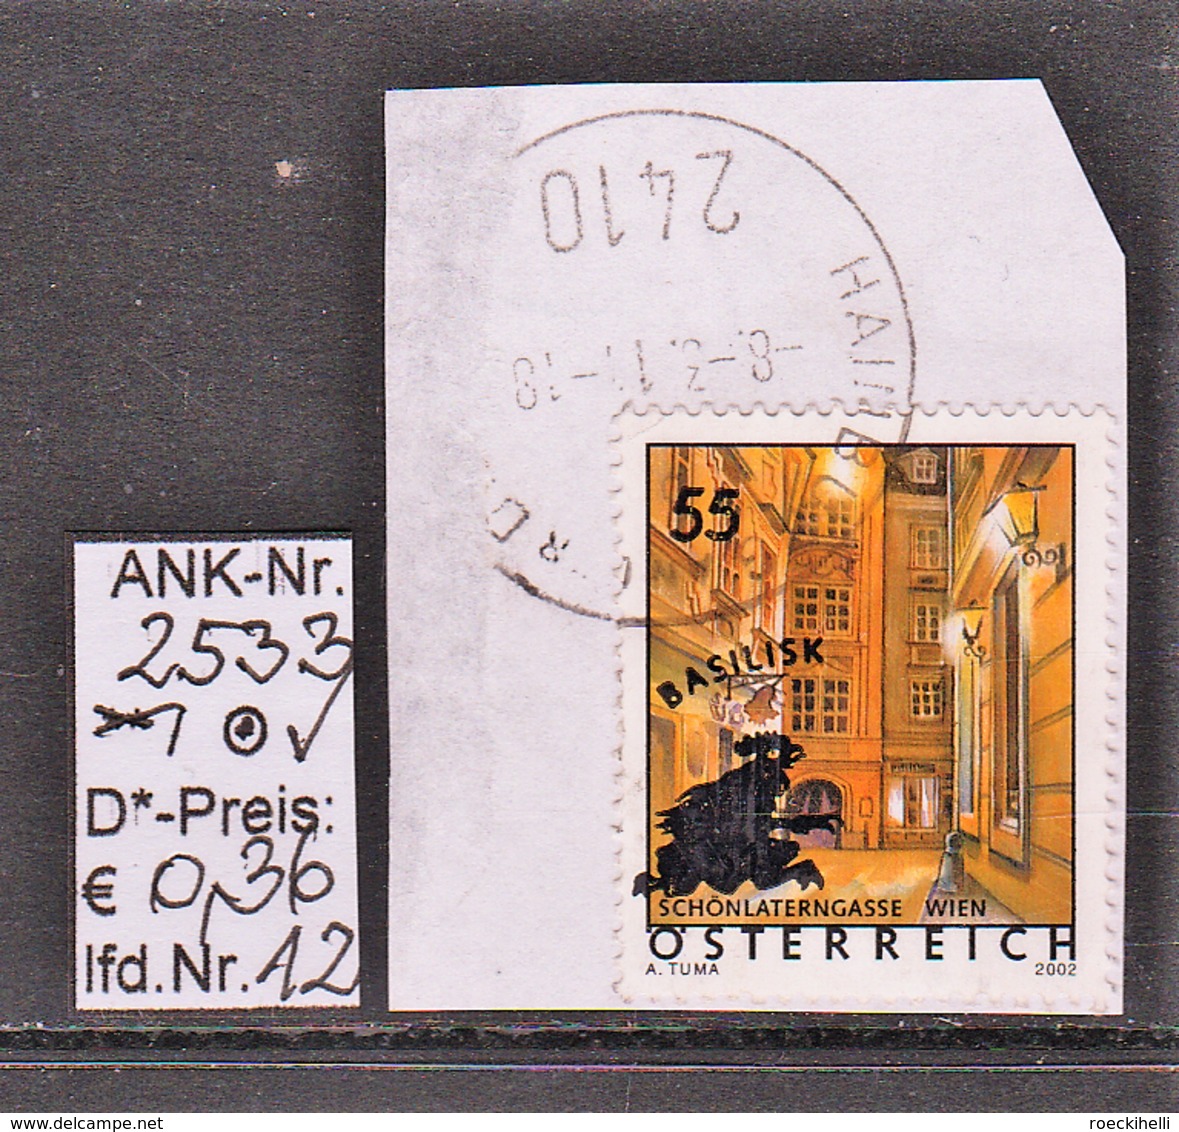 13.10.2004-Überdruck "Ferienland Österreich-Basilisk" - o gestempelt - s. Scan (2533o 01-02,04,06-07,09-12)